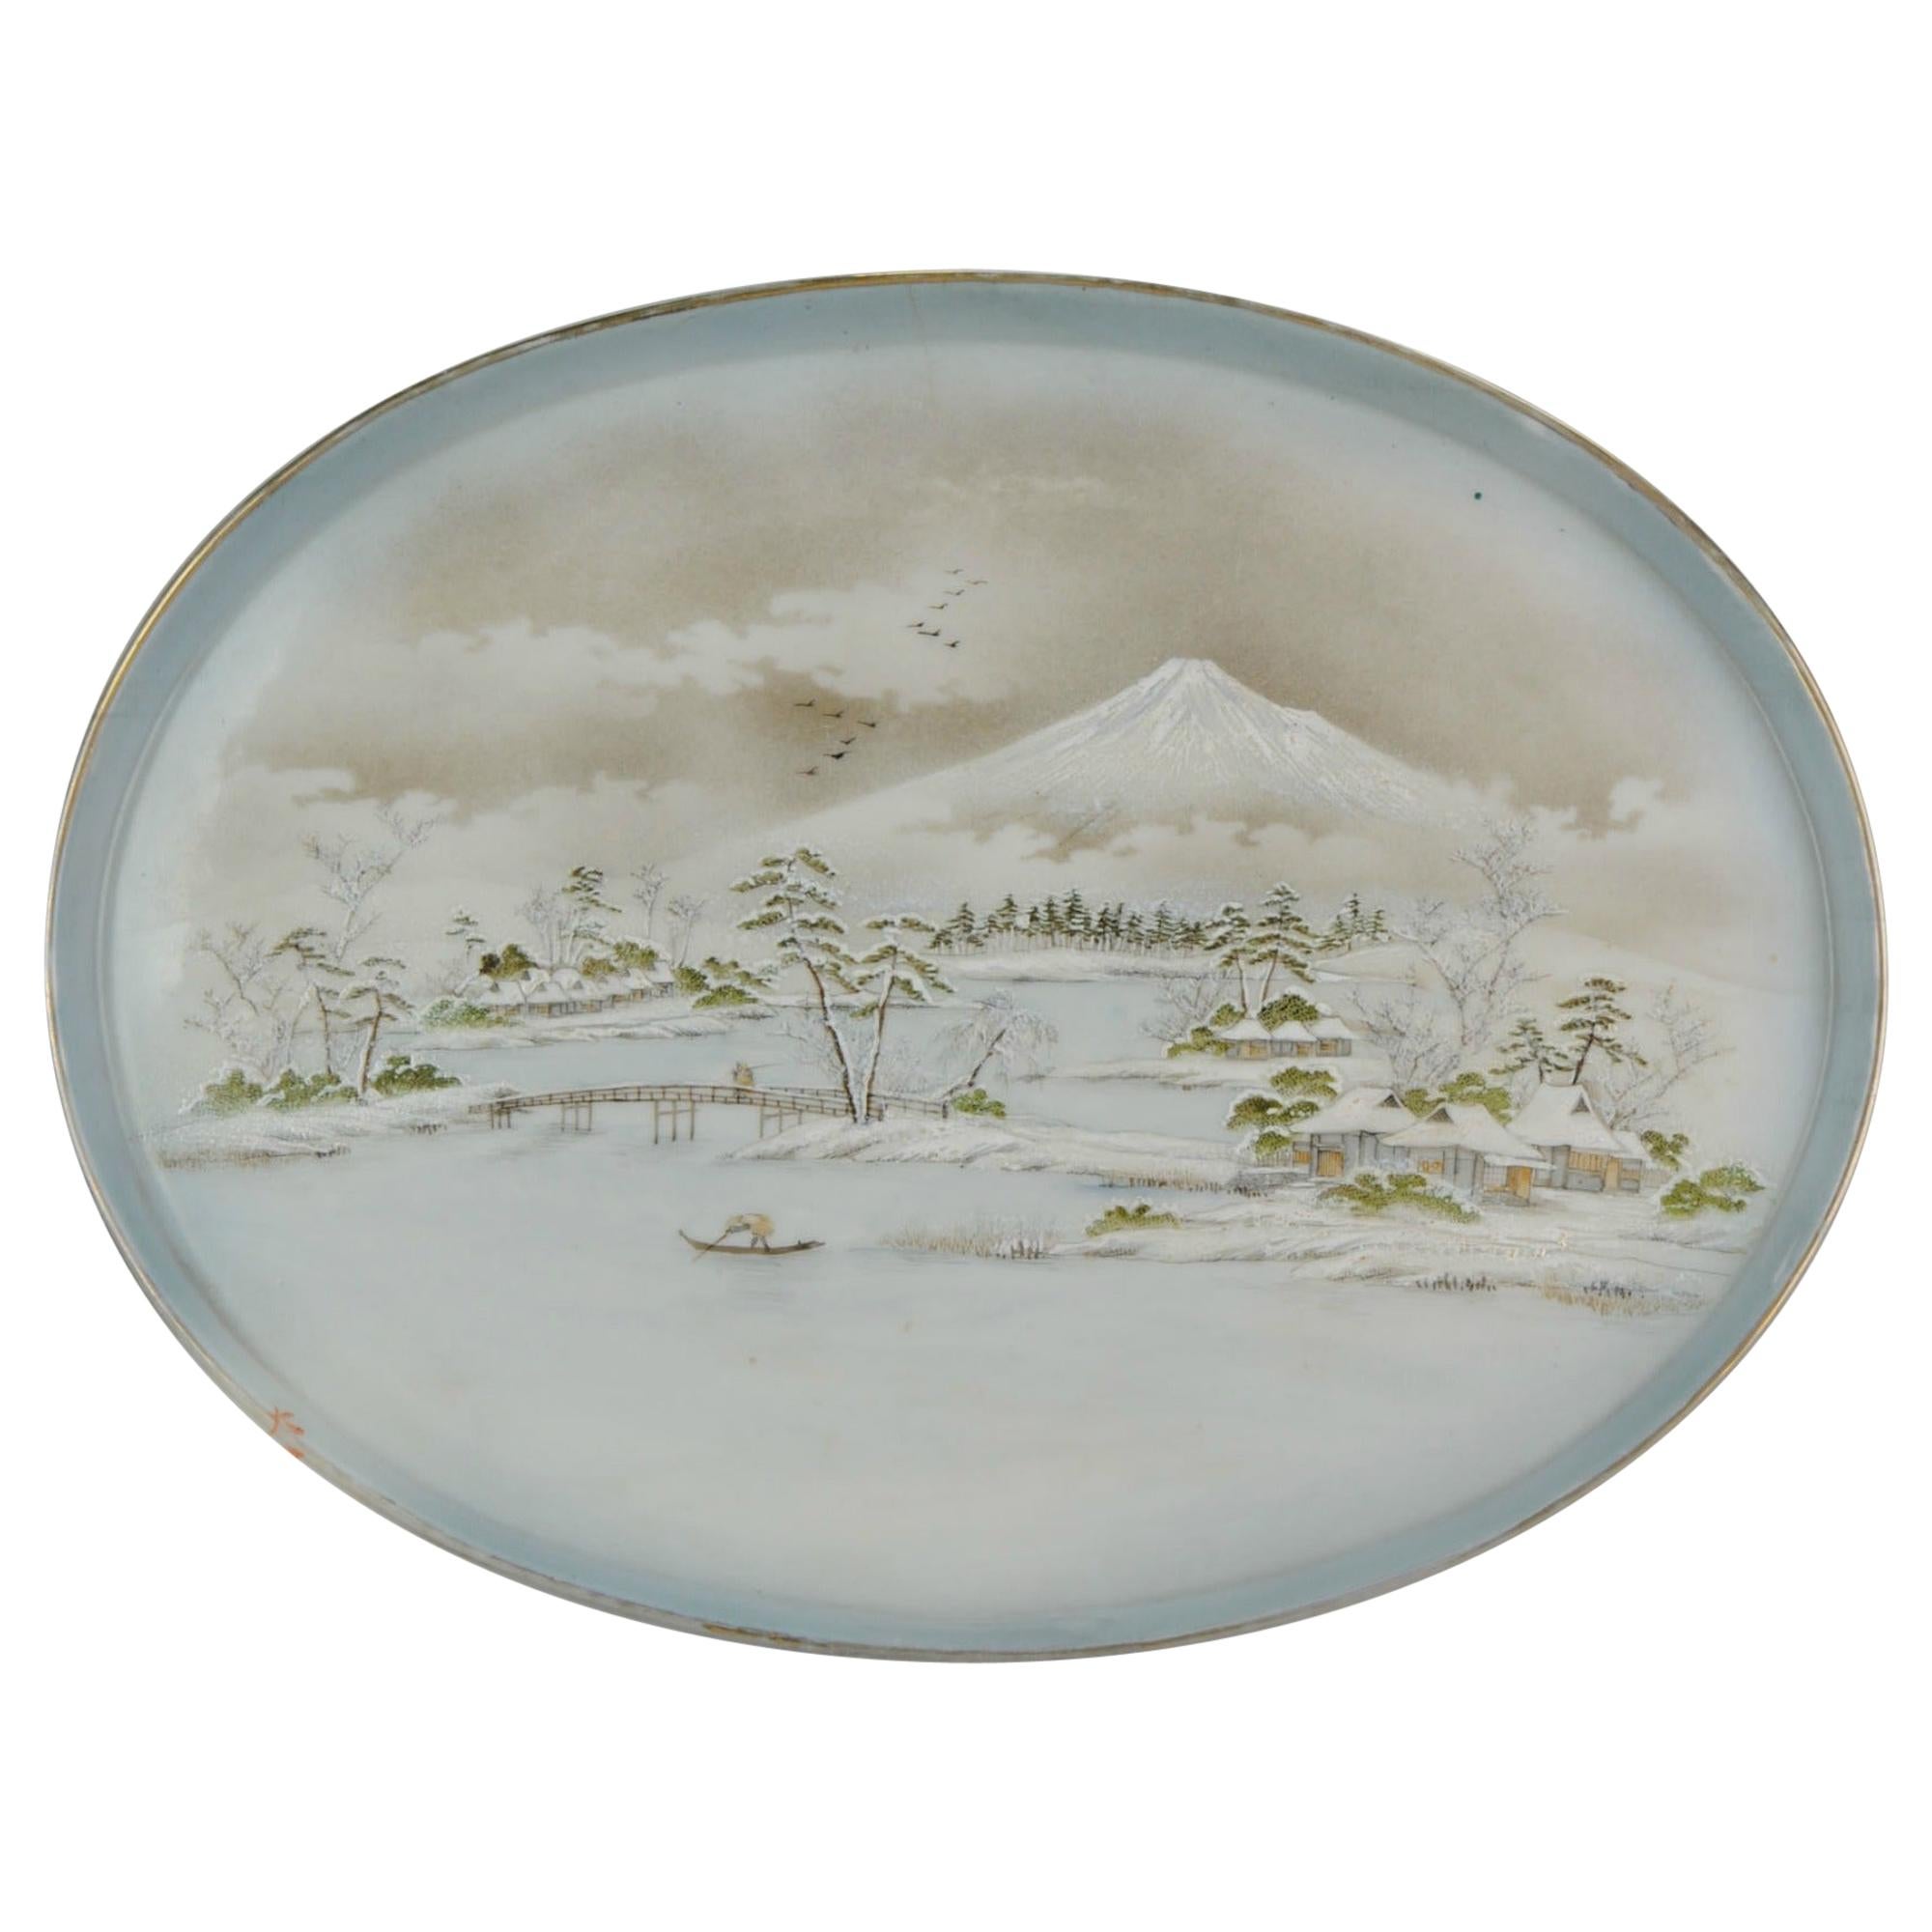 Japanisches Porzellan des 20. Jahrhunderts, Meiji Taisho-Plattenteller mit gekennzeichneter Landschaft Fuji